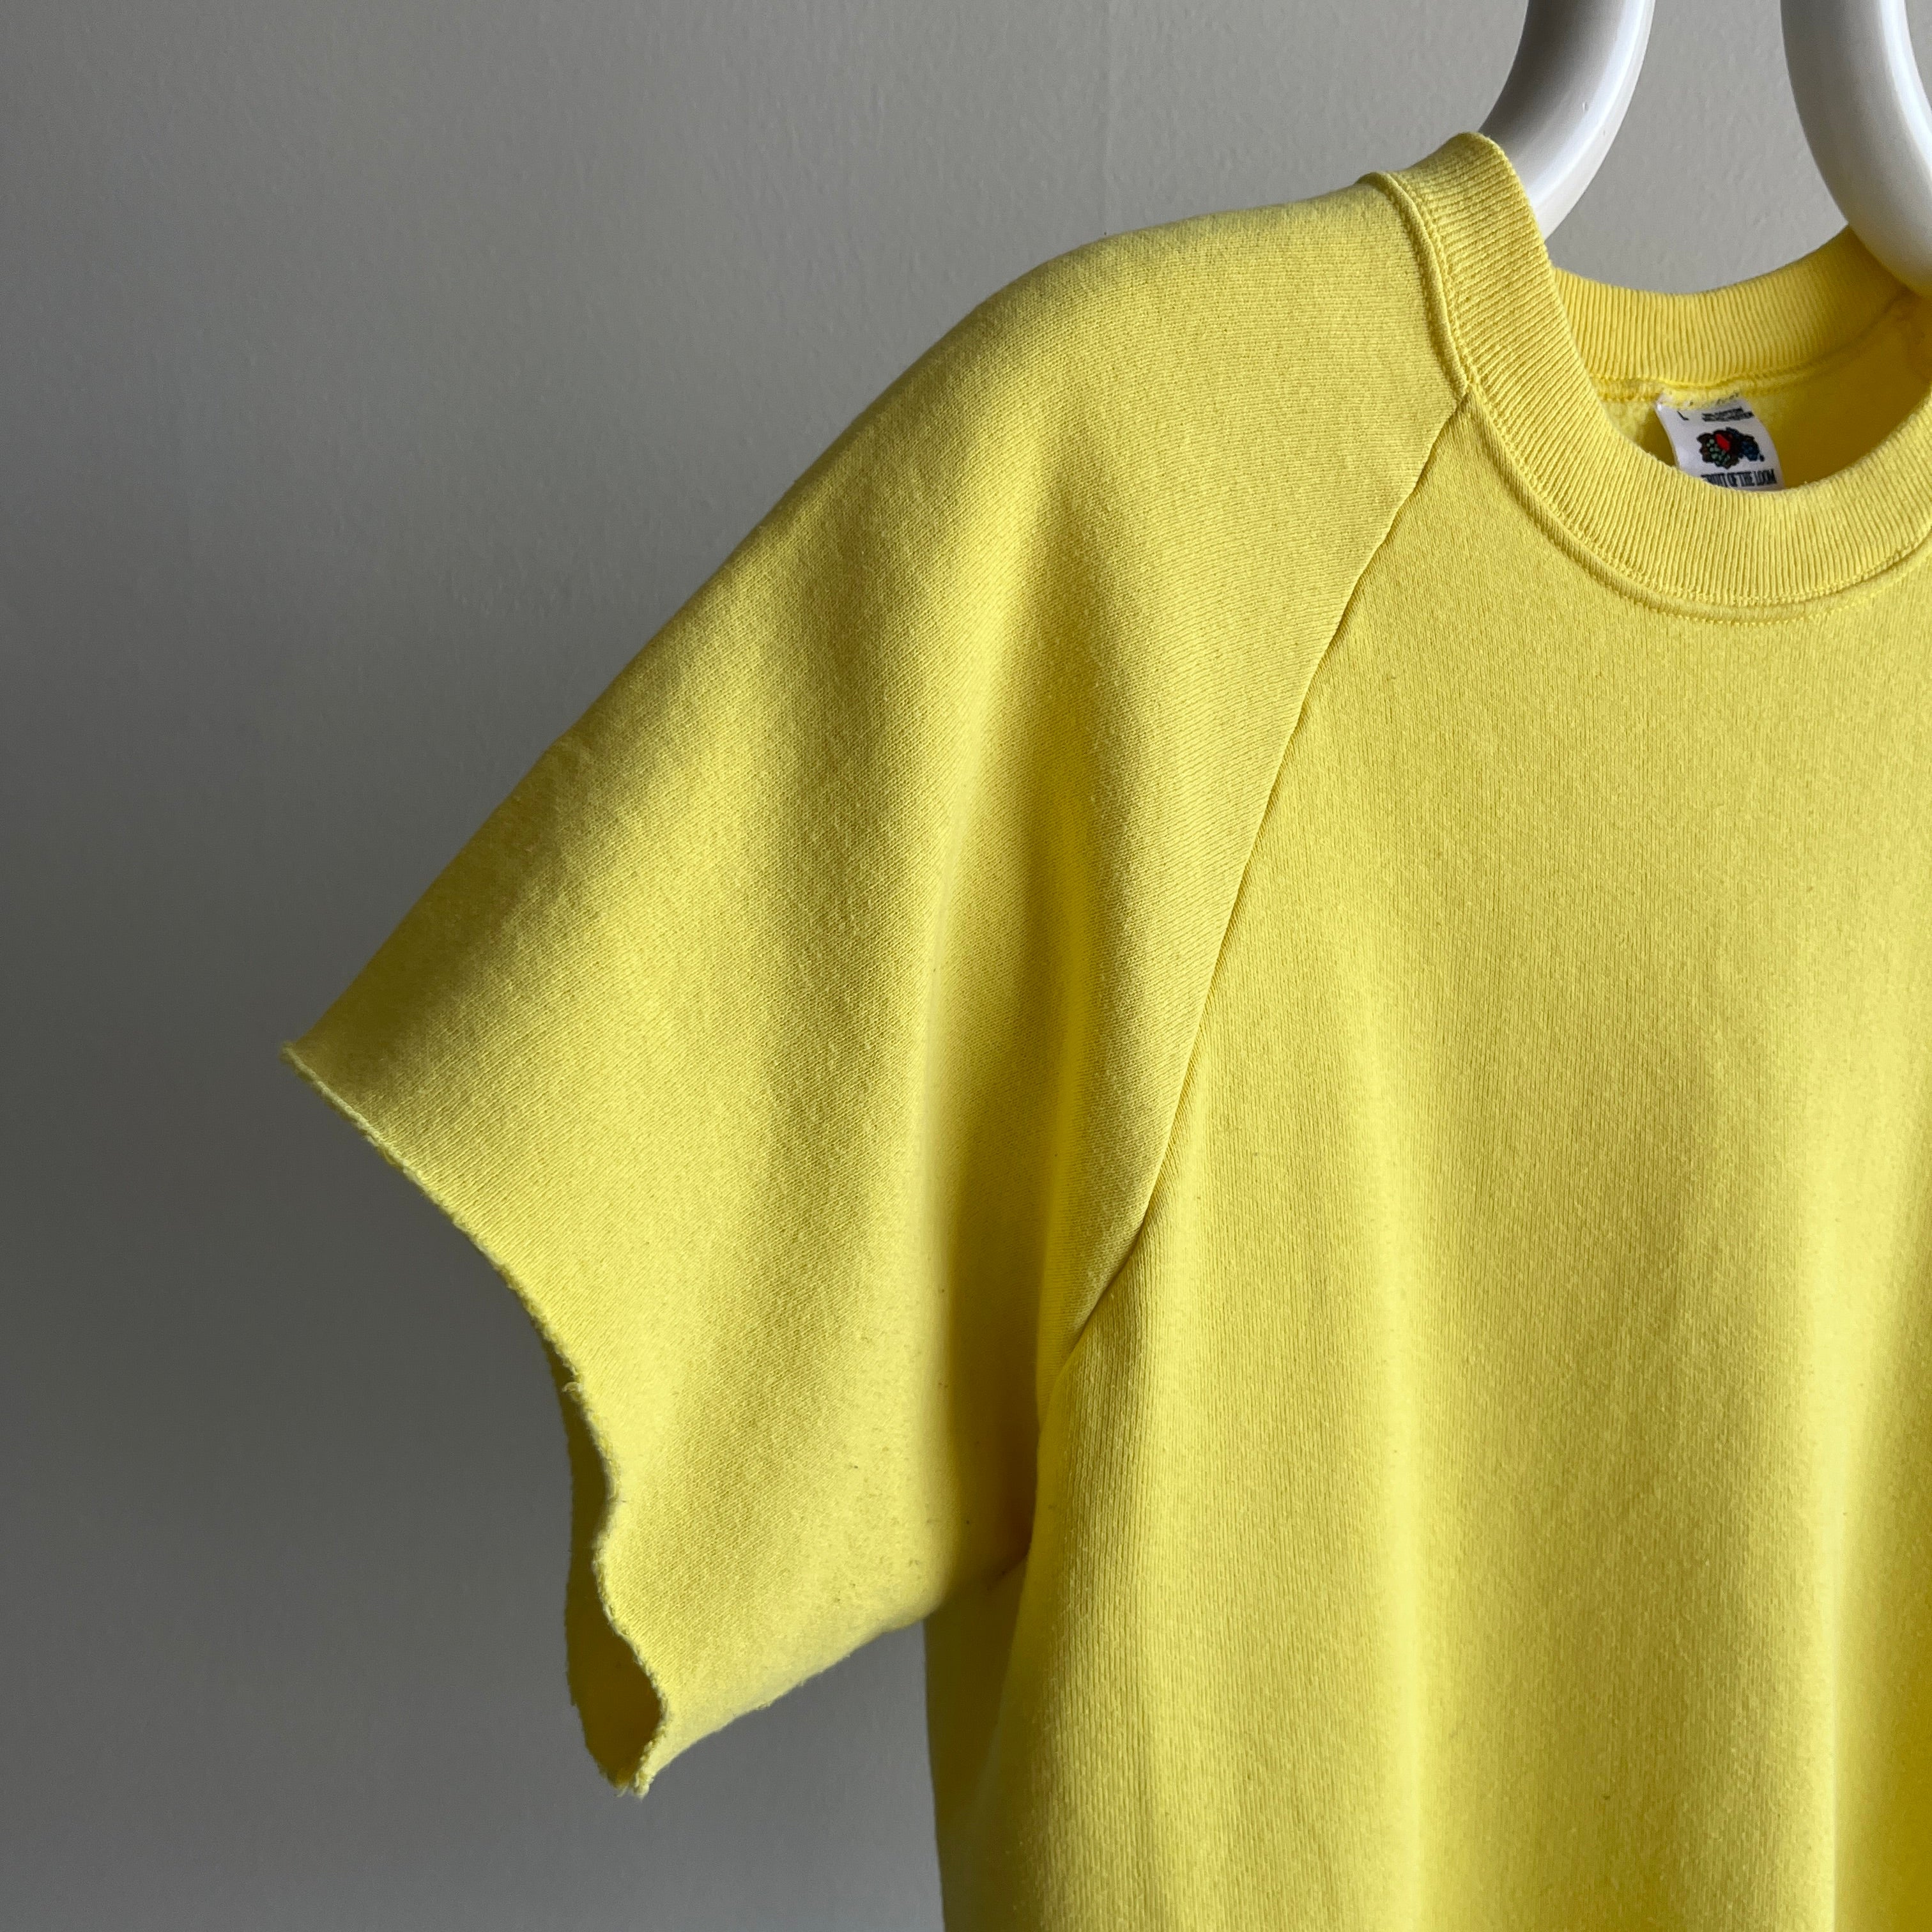 1980s Canary Yellow Cut Sleeve Warm Up Sweatshirt